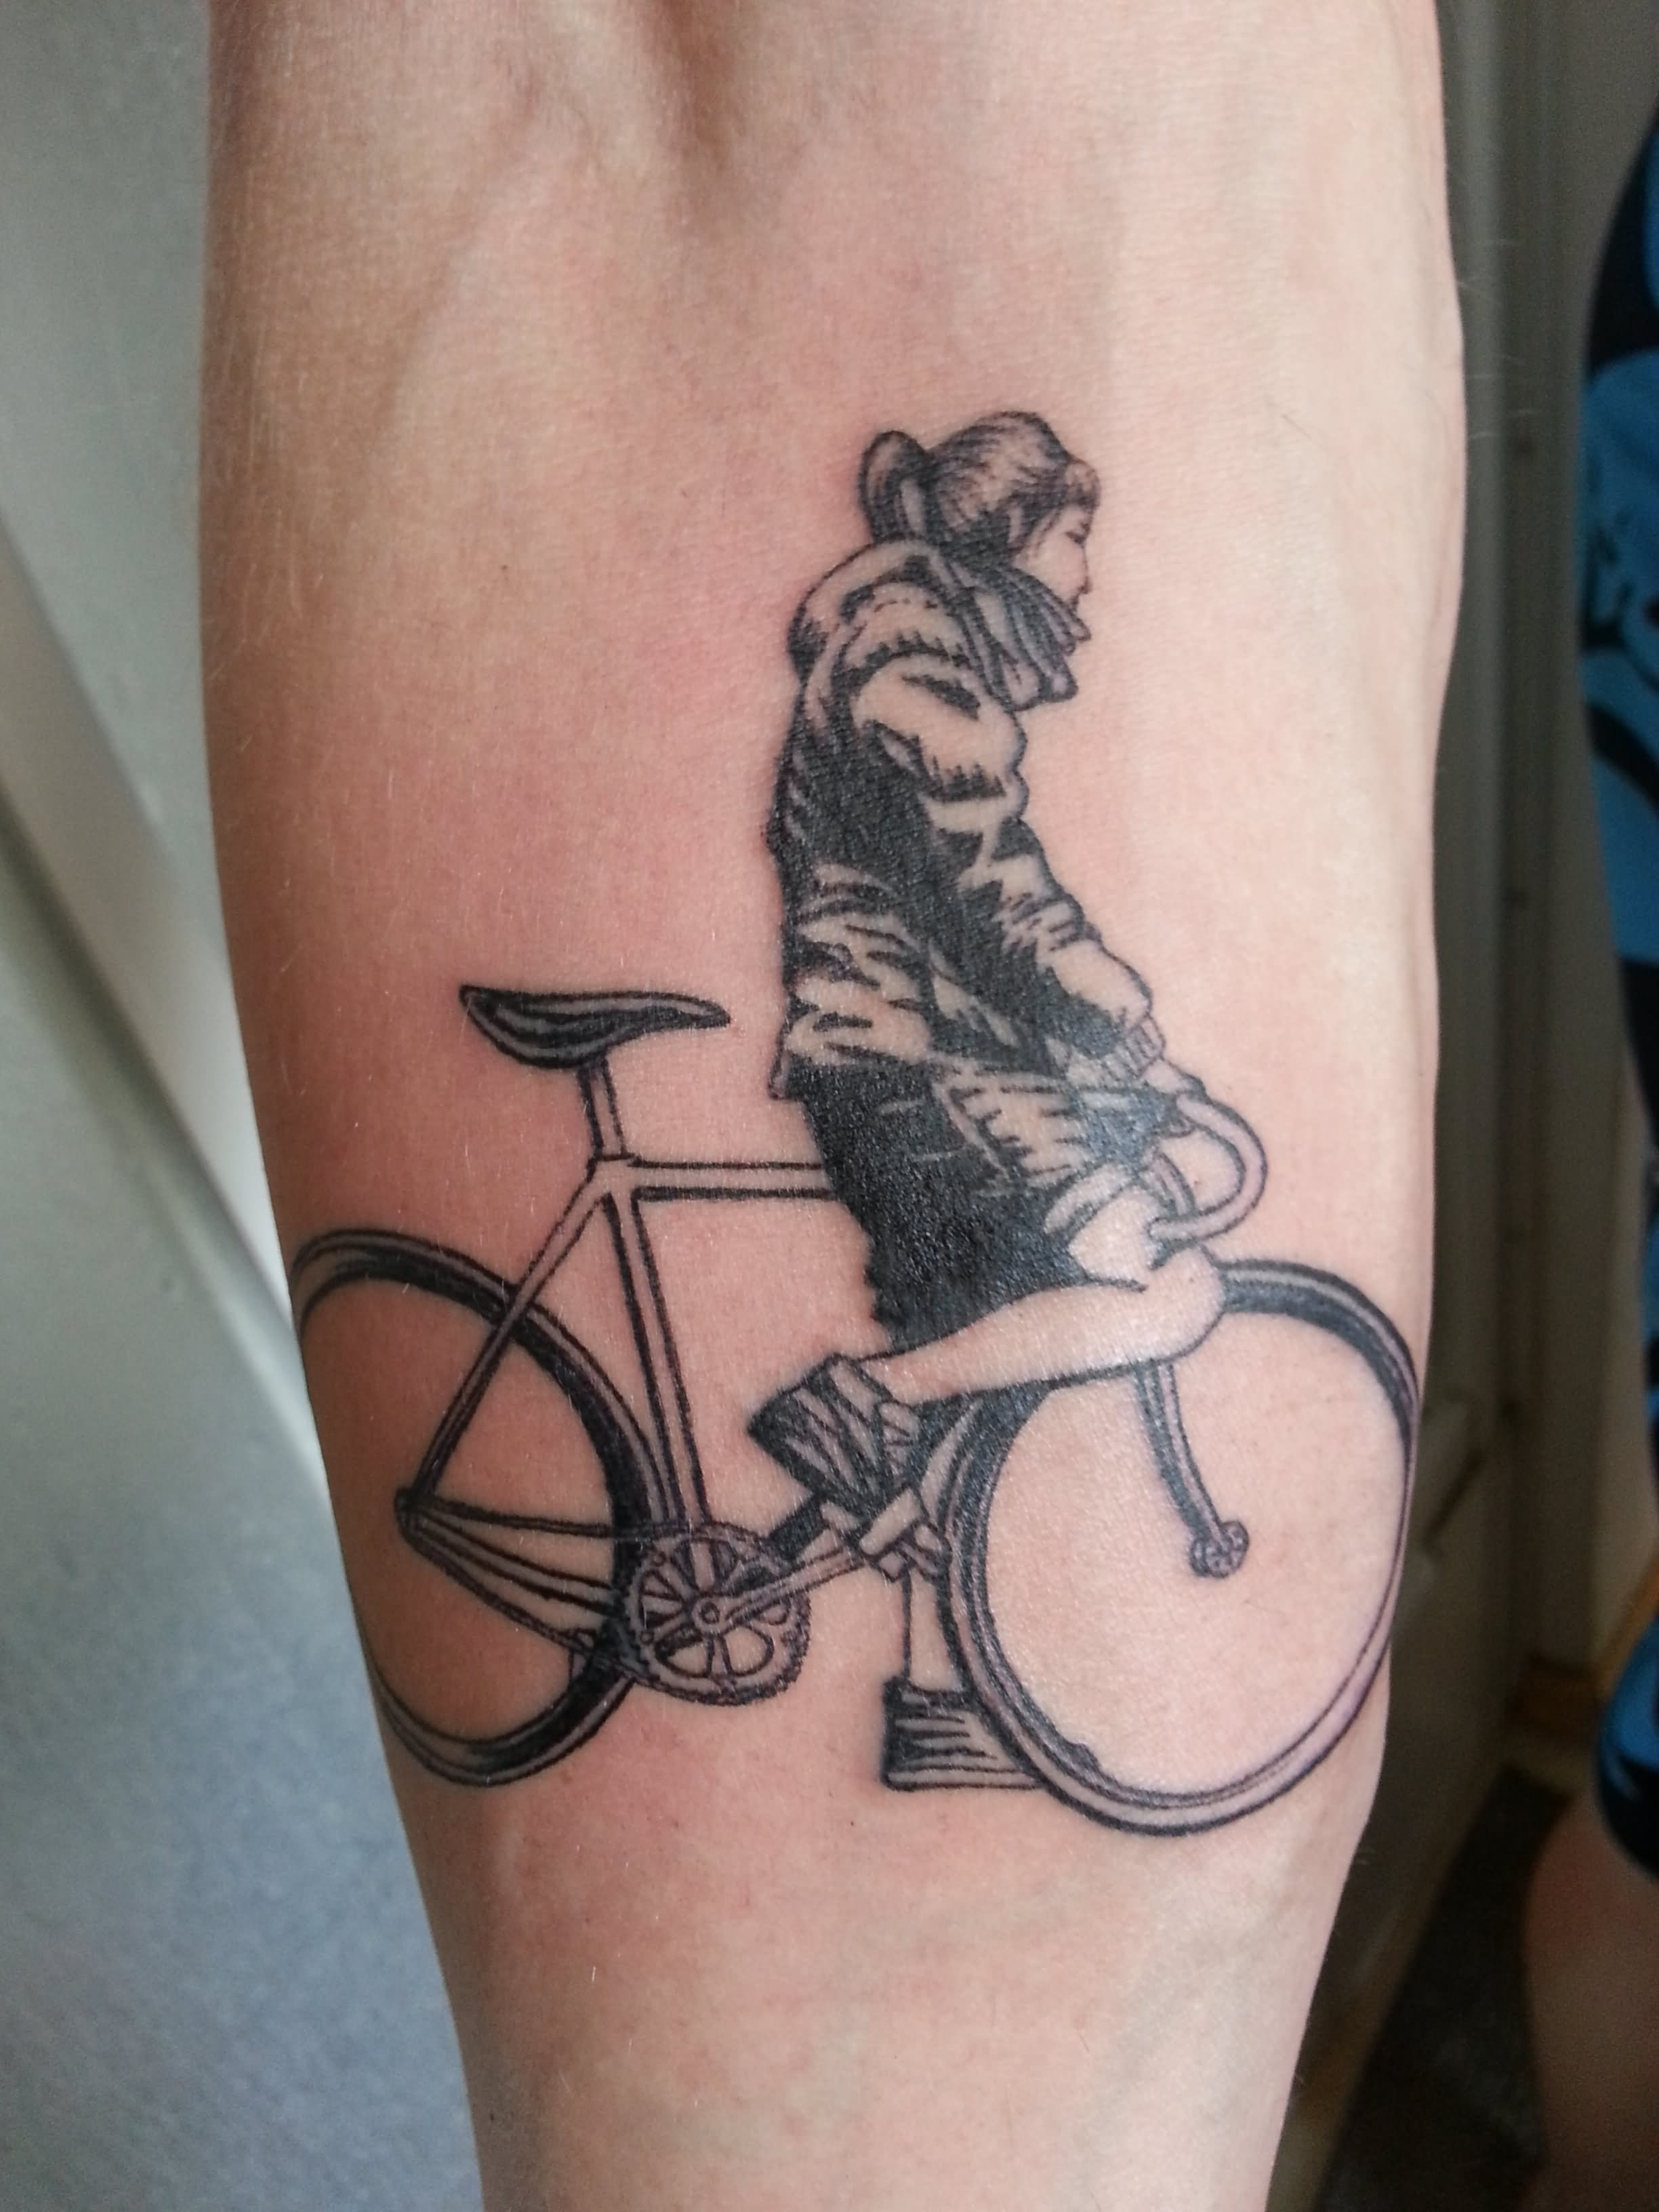 Black Ink Girl On Bike Tattoo Design For Forearm